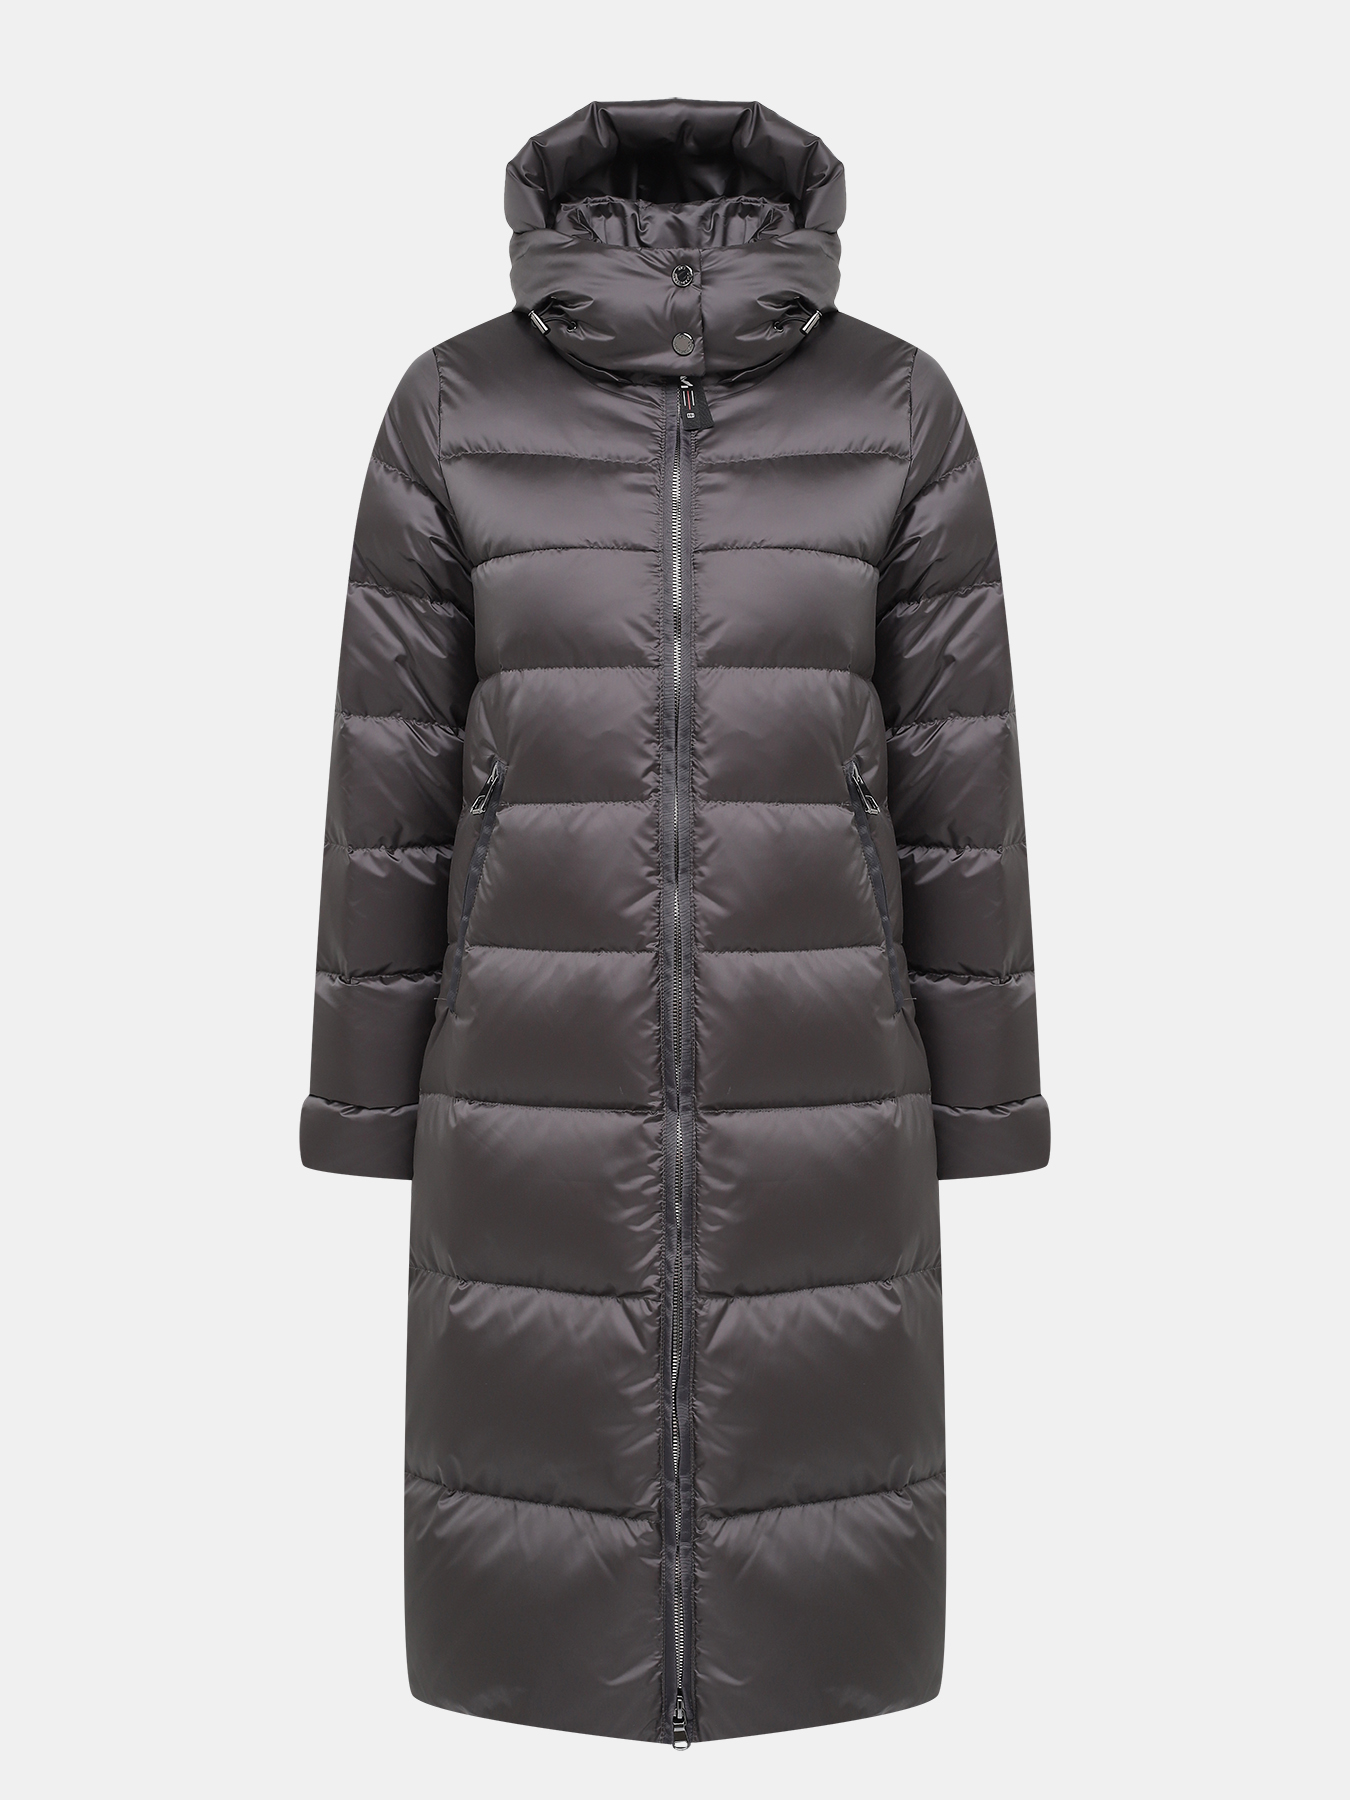 Пальто зимнее AVI 433634-020, цвет серый, размер 44